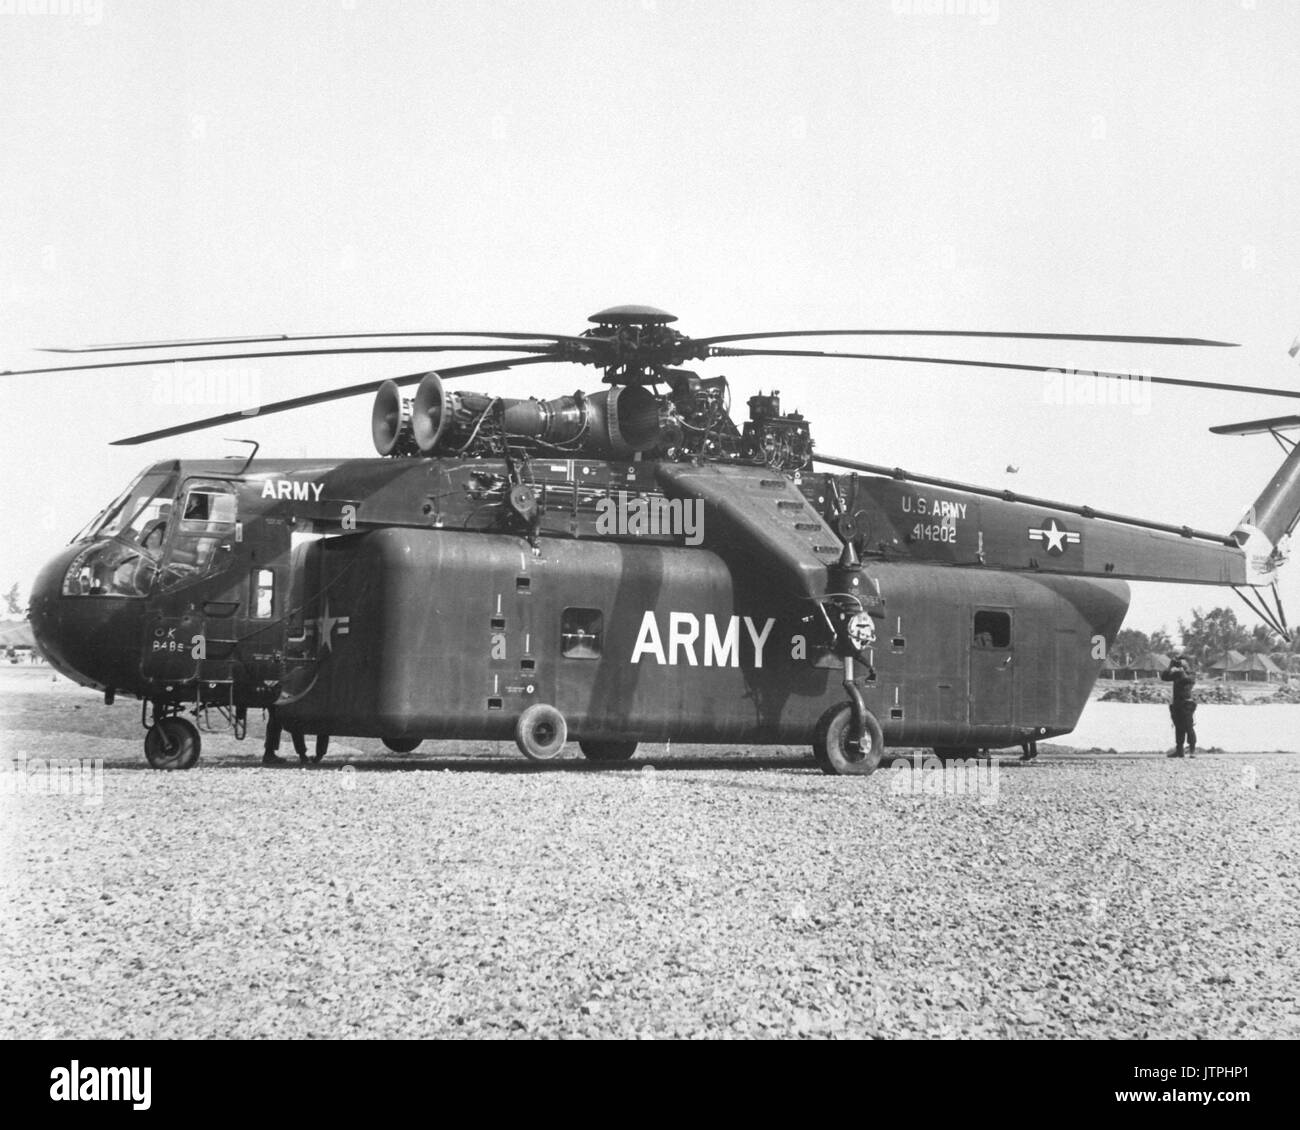 L'une des pièces uniques d'équipement apportés au Vietnam par la Division de cavalerie (Airmobile), de l'armée américaine, est le ciel immense Crane CH-54D'un hélicoptère qui peut soulever des charges énormes. (USIA) DATE EXACTE INCONNUE SHOT #  FICHIER NARA : 306 MVP-guerres et conflits Guichet emplois BOOK #  : 400 Banque D'Images